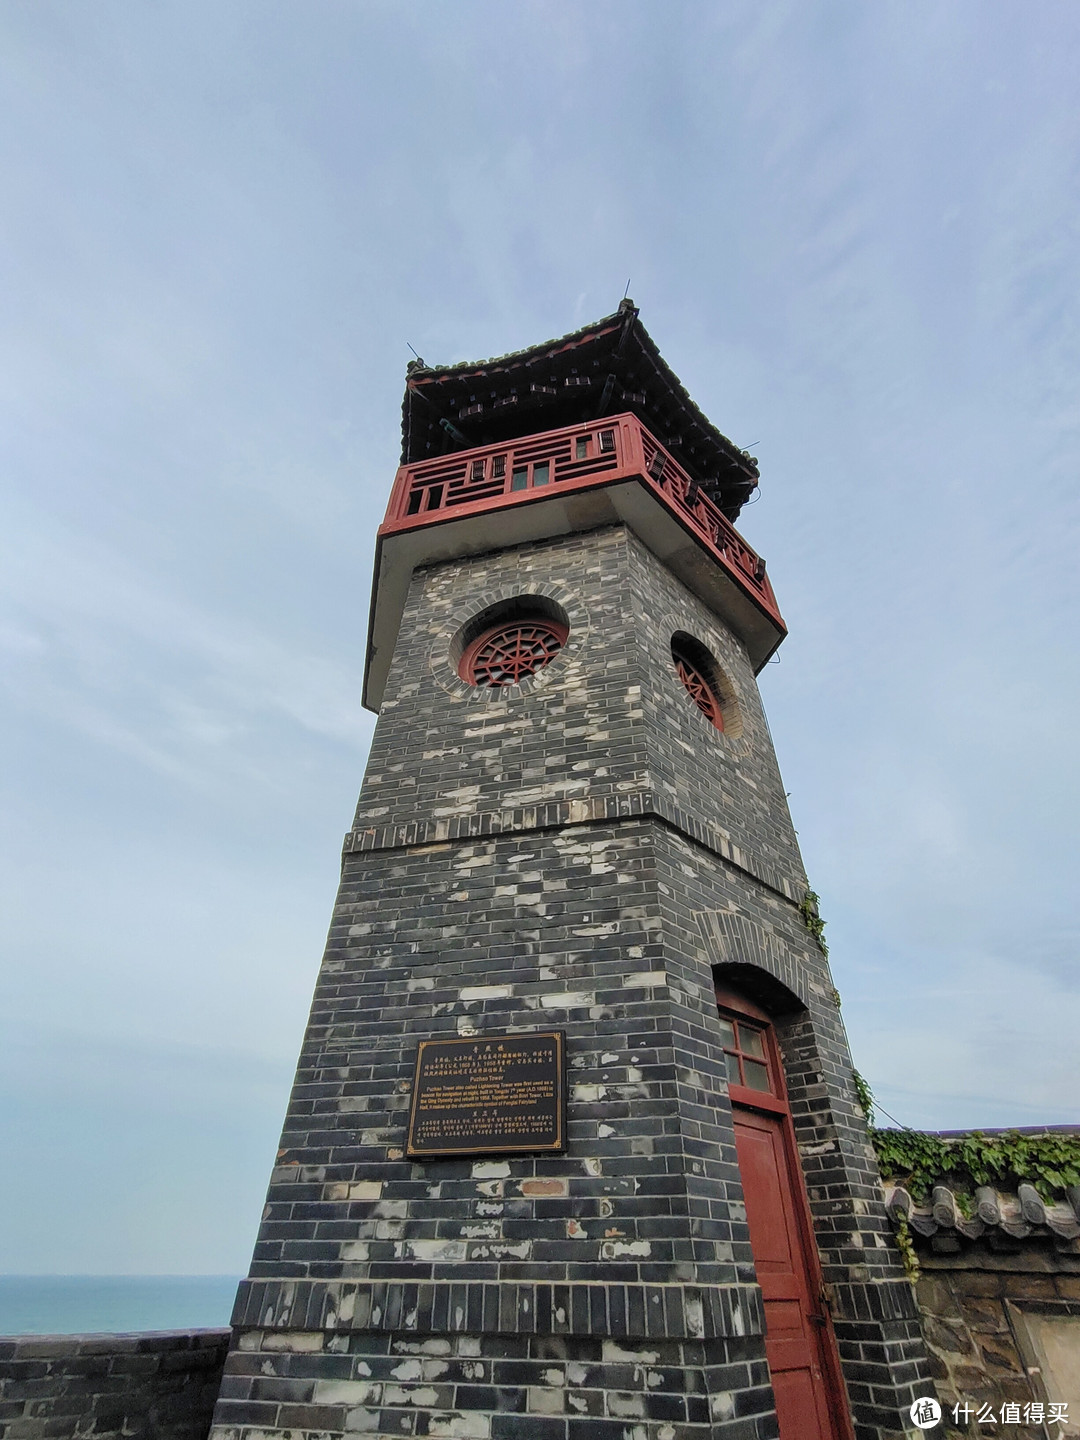 普照楼又名灯楼，位于蓬莱阁东北角的丹崖绝壁之上，始建于清同治七年（1868年），当时作为夜间行船导航用的标灯。目前已失去灯塔的作用，成为一处标志性建筑。